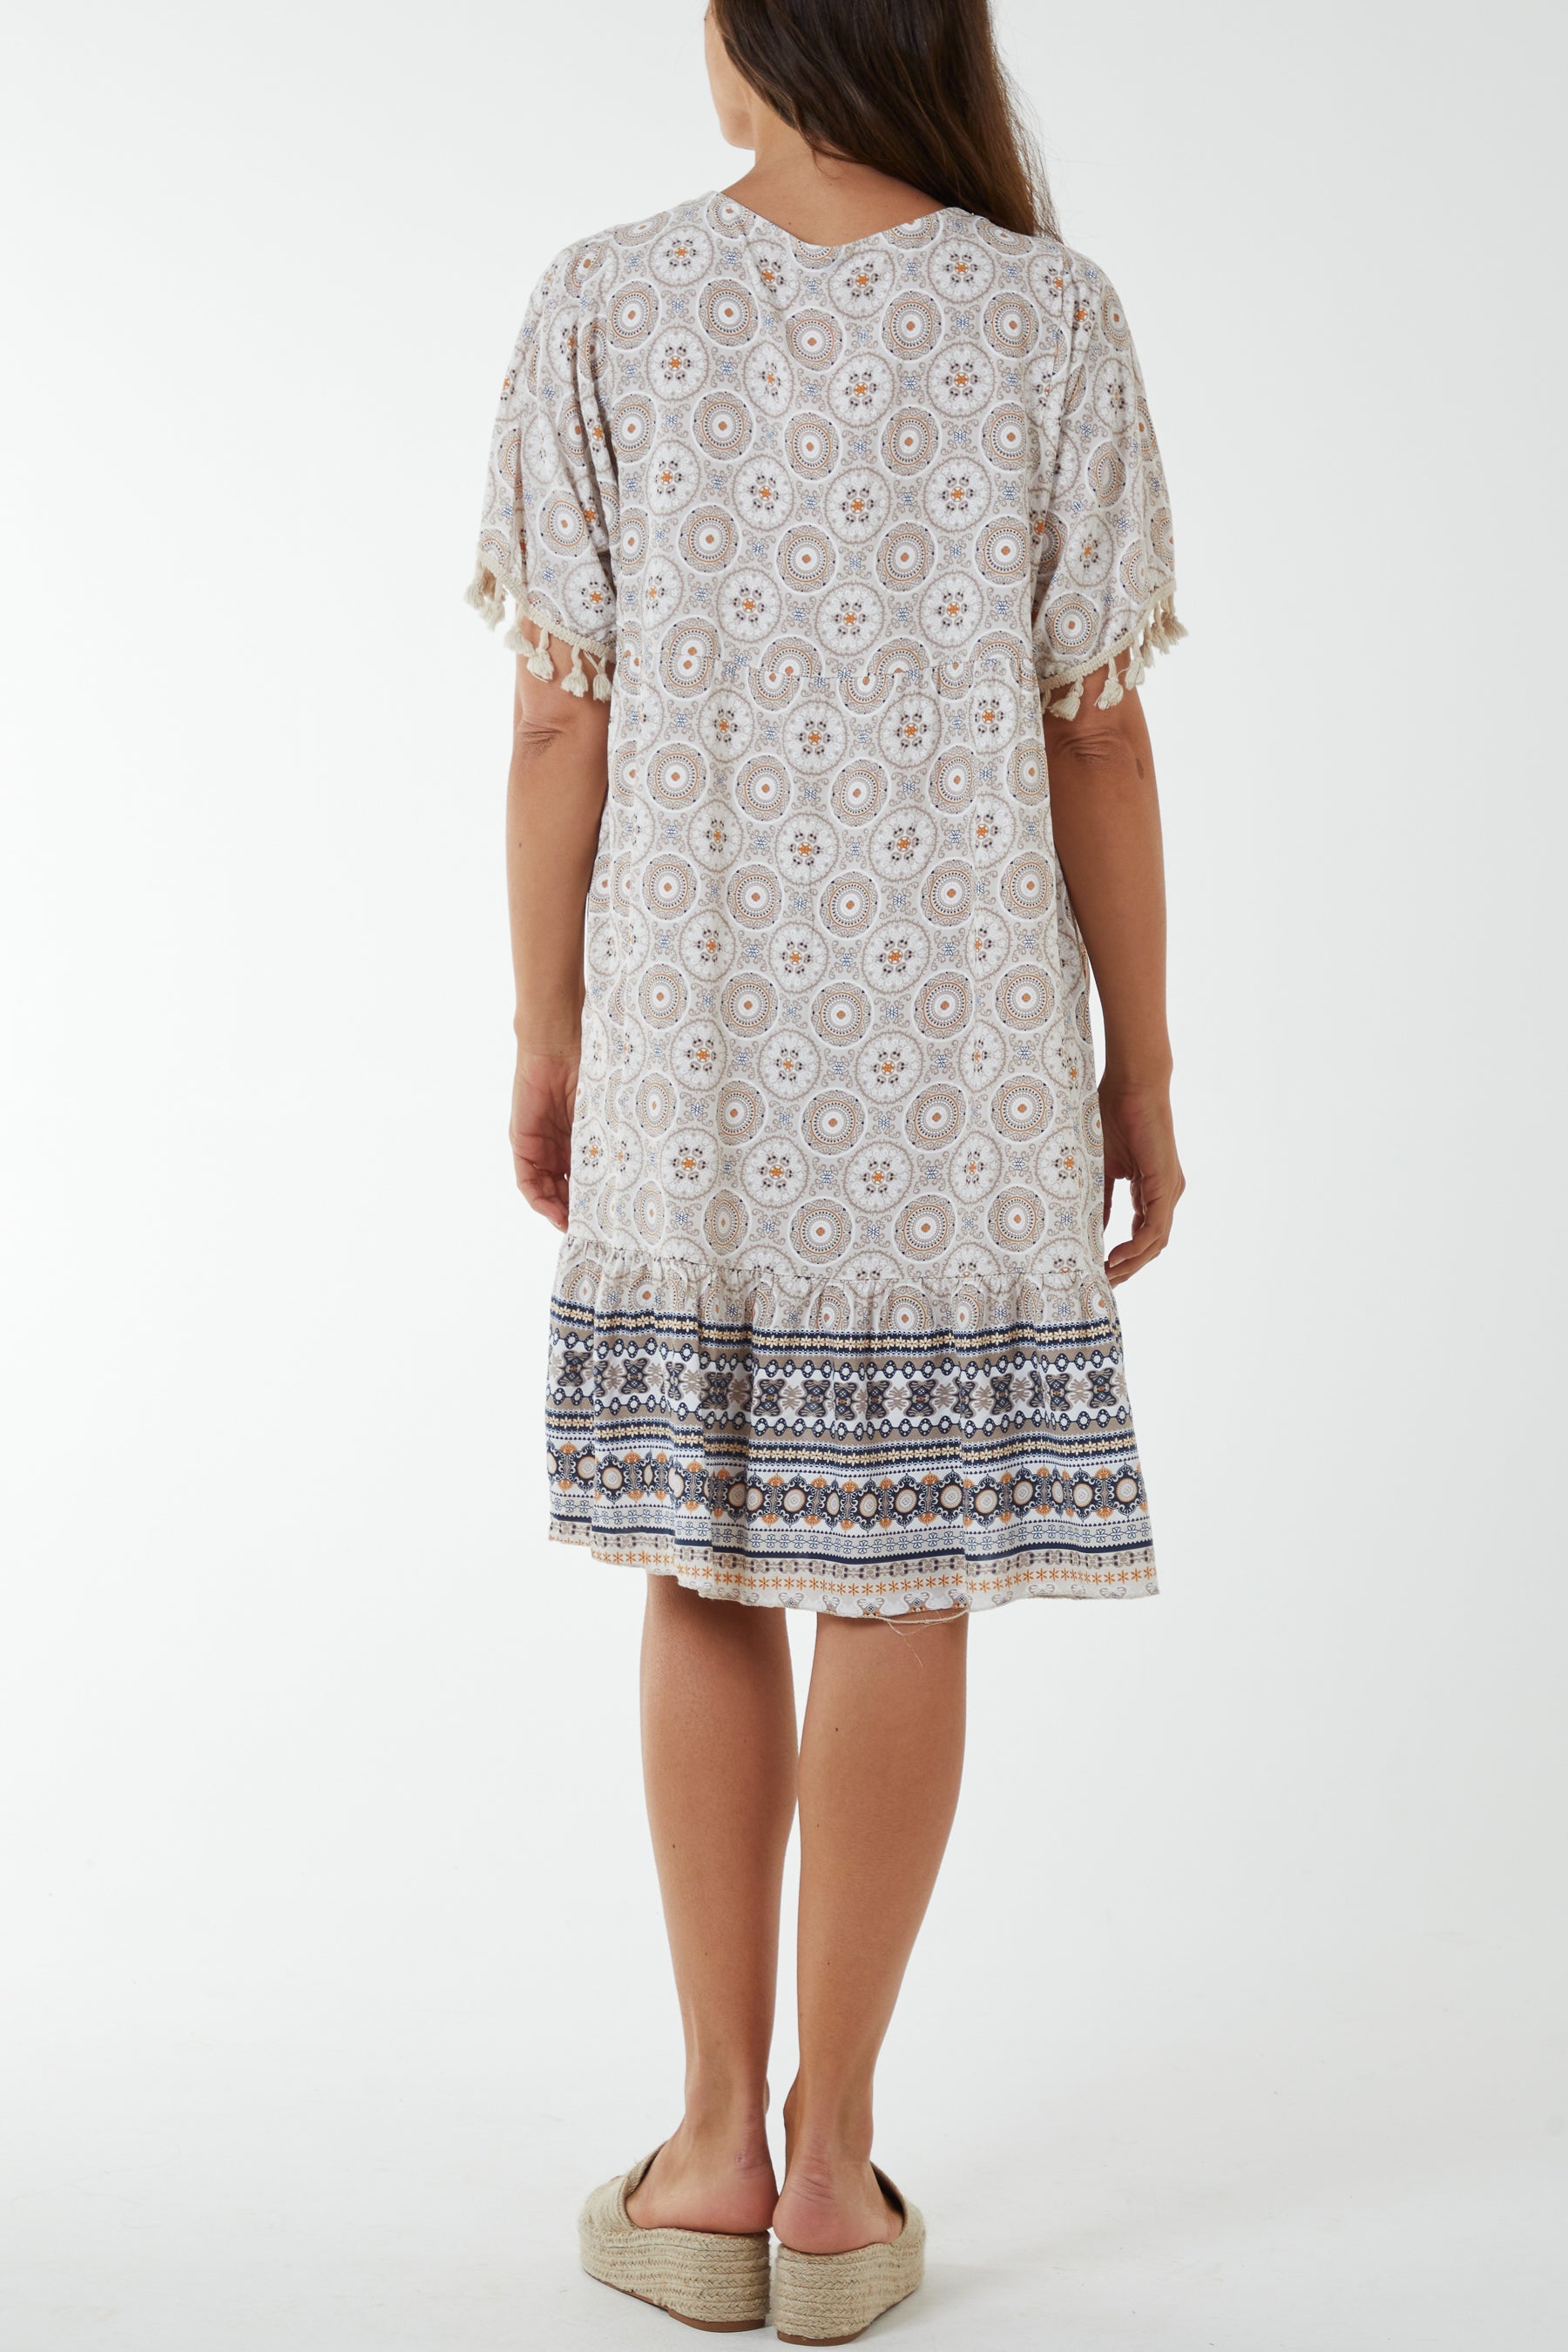 Geometric Print Dress with Tassels